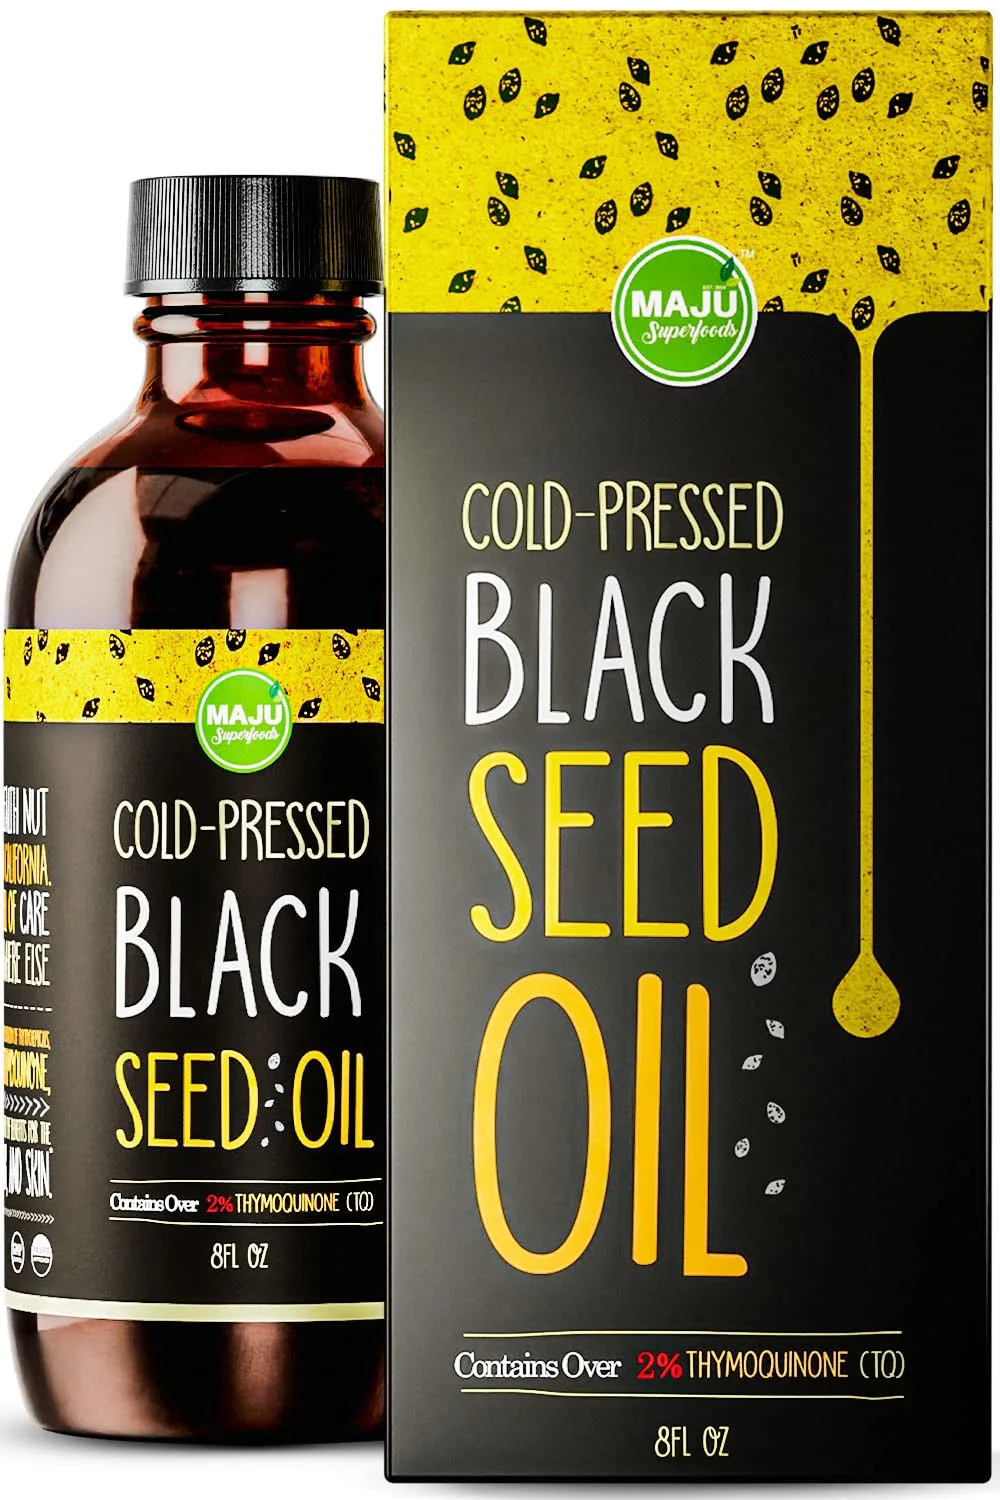 maju black seed oil